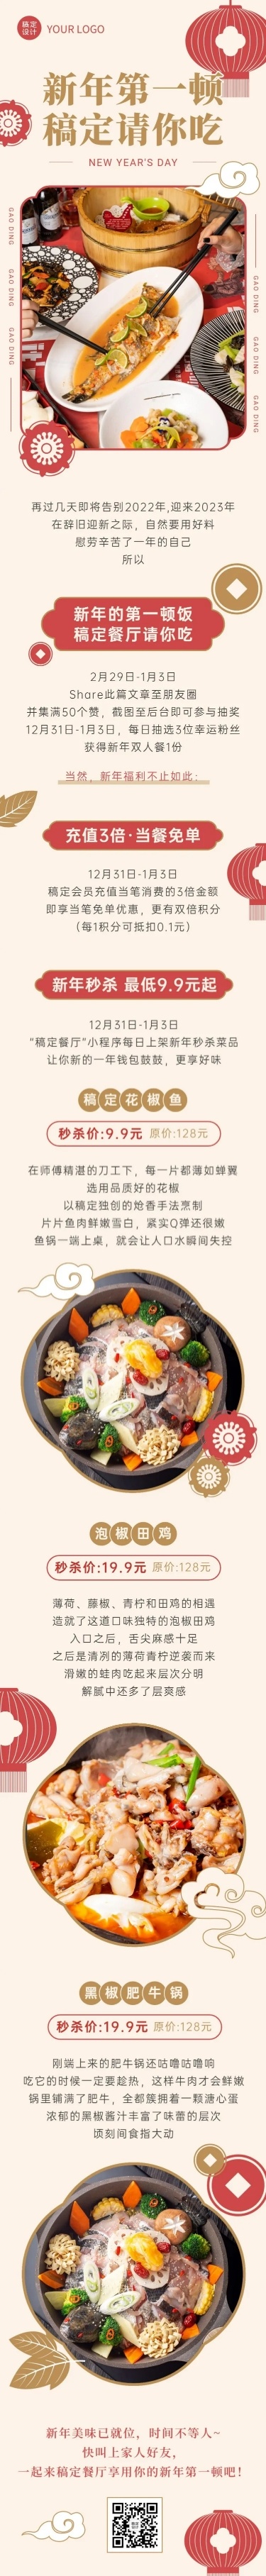 新年餐饮营销中国风文章长图